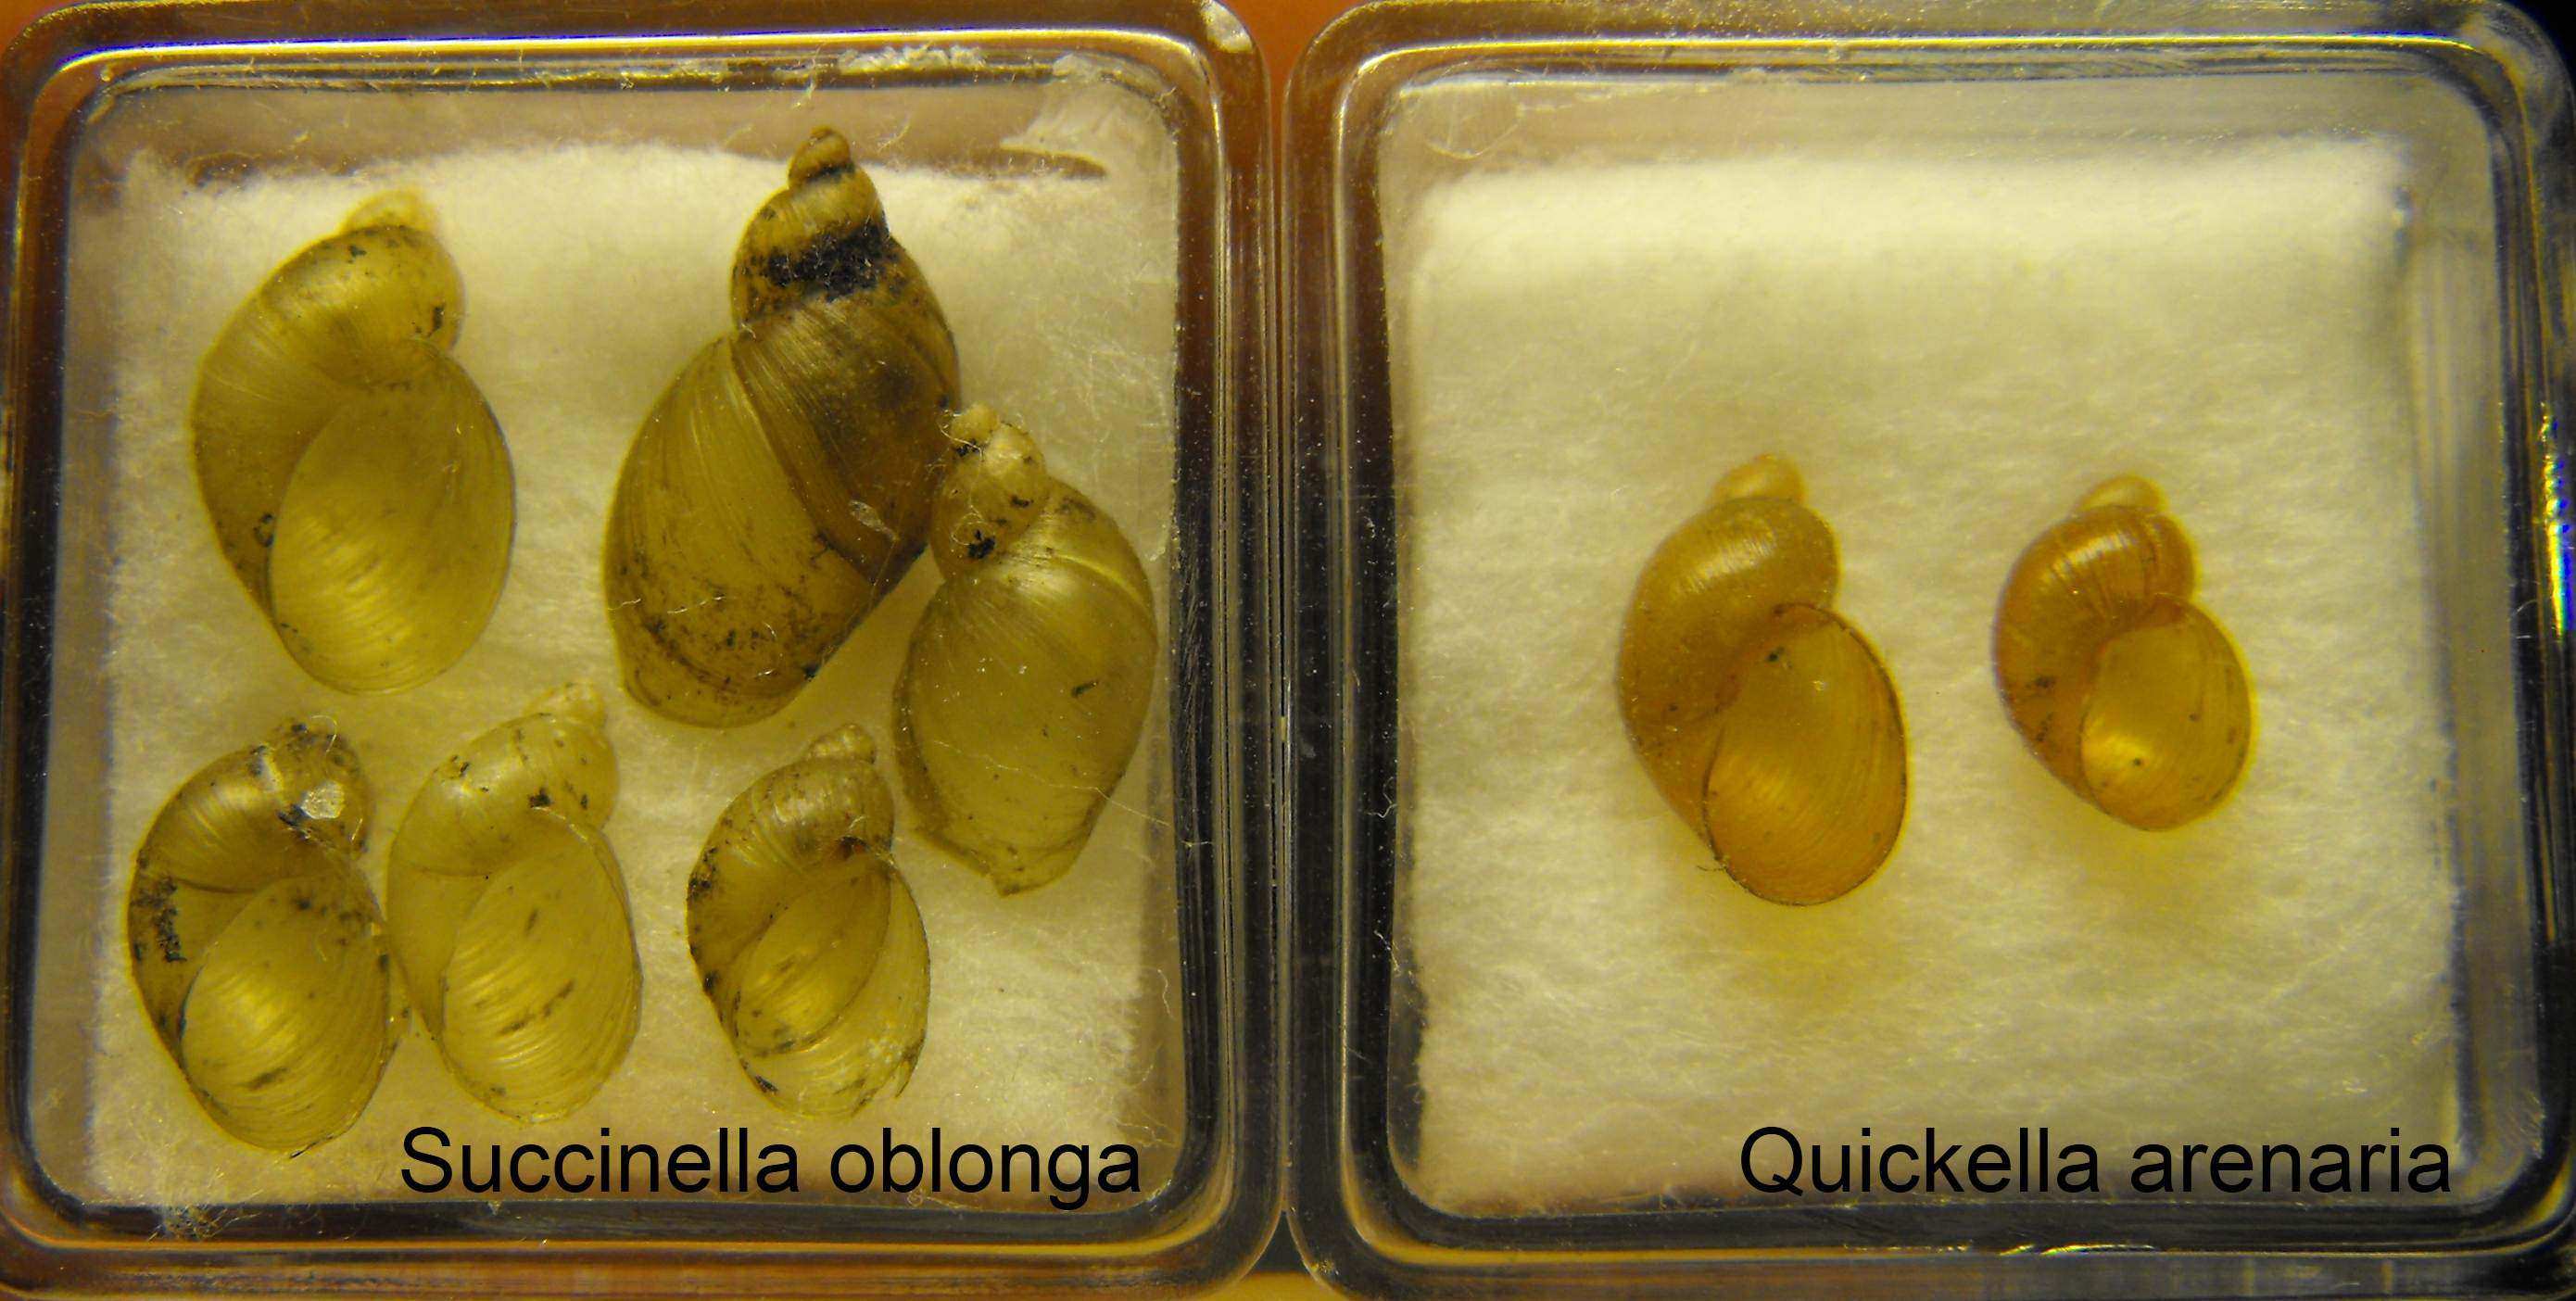 Quickella arenaria vs Succinella oblonga